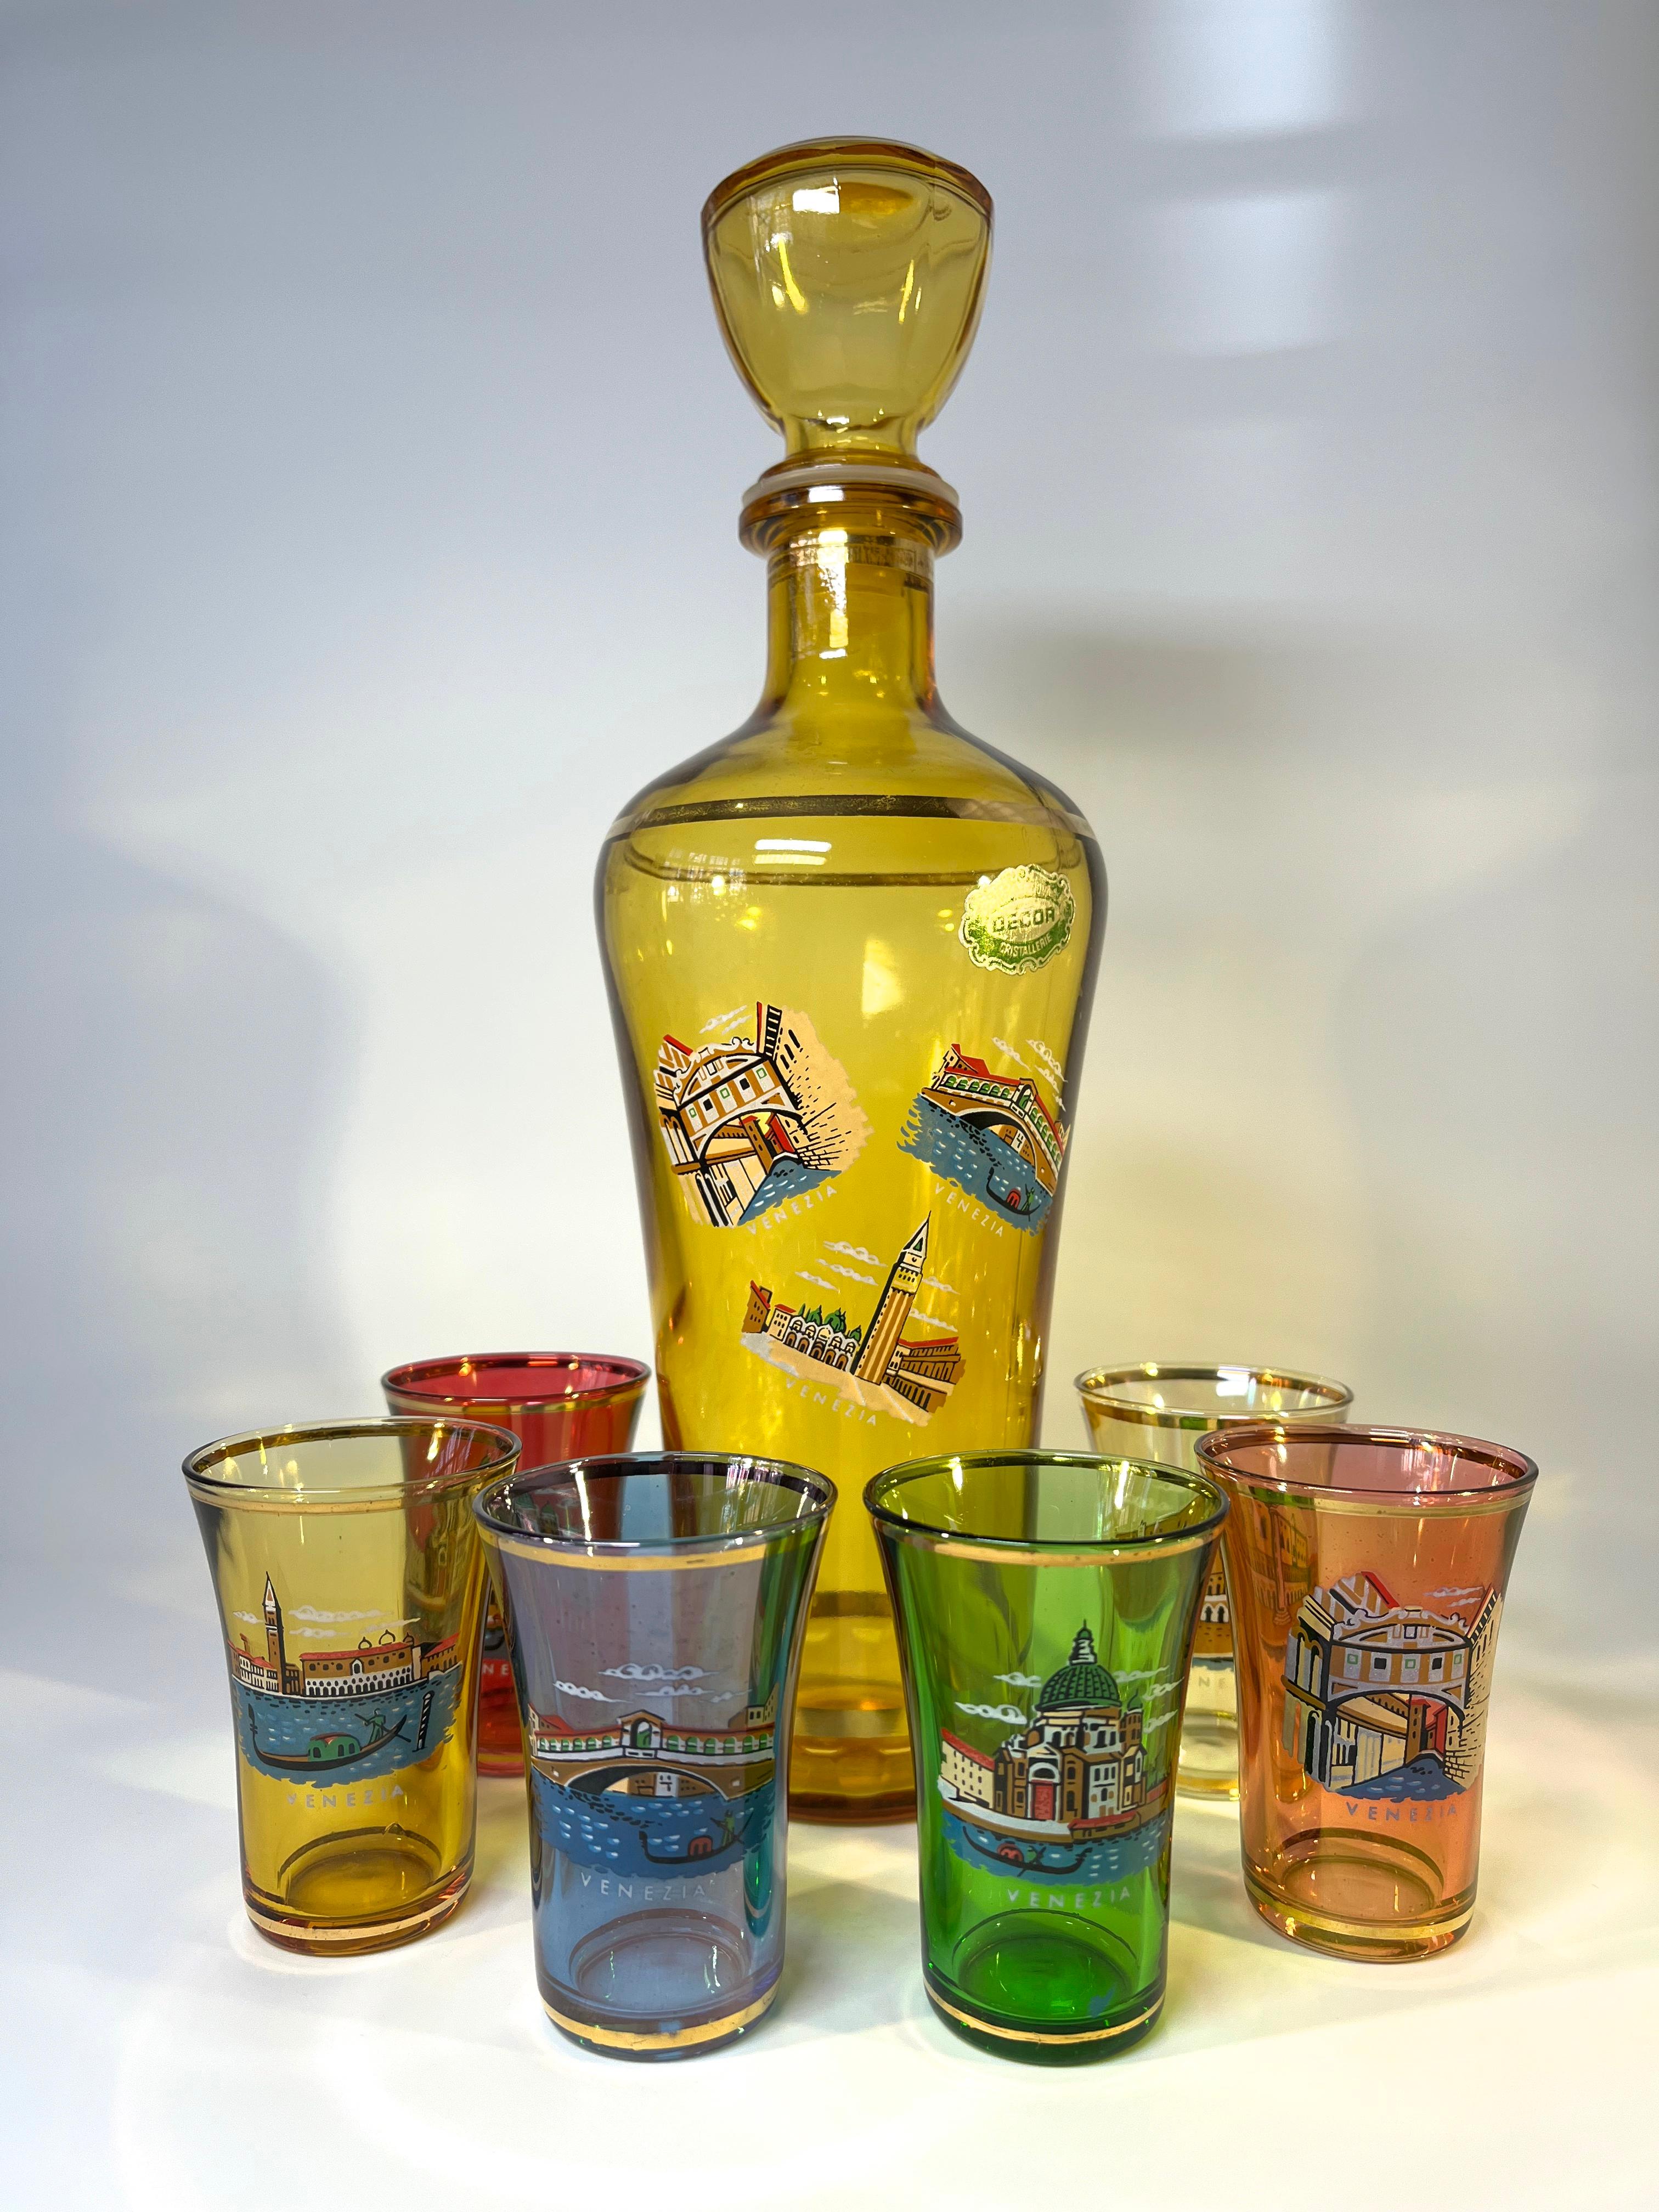 Carafe en verre nostalgique et six verres représentant les célèbres sites de Venise
Fabuleusement rétro et kitsch - une pièce de collection
Carafe de couleur ambre avec des scènes émaillées de Venise, complète avec un bouchon en plastique de